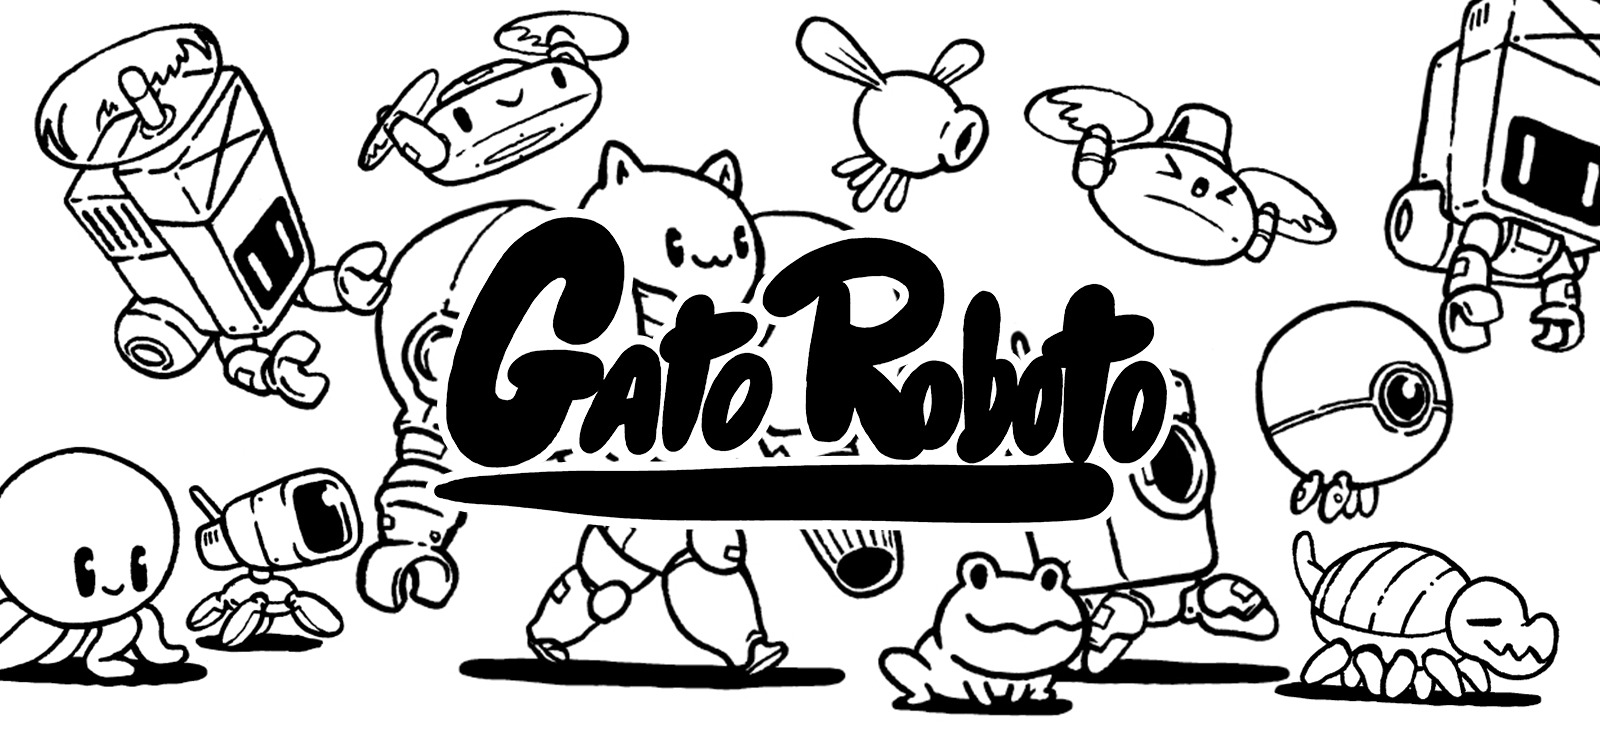 download steam gato roboto for free